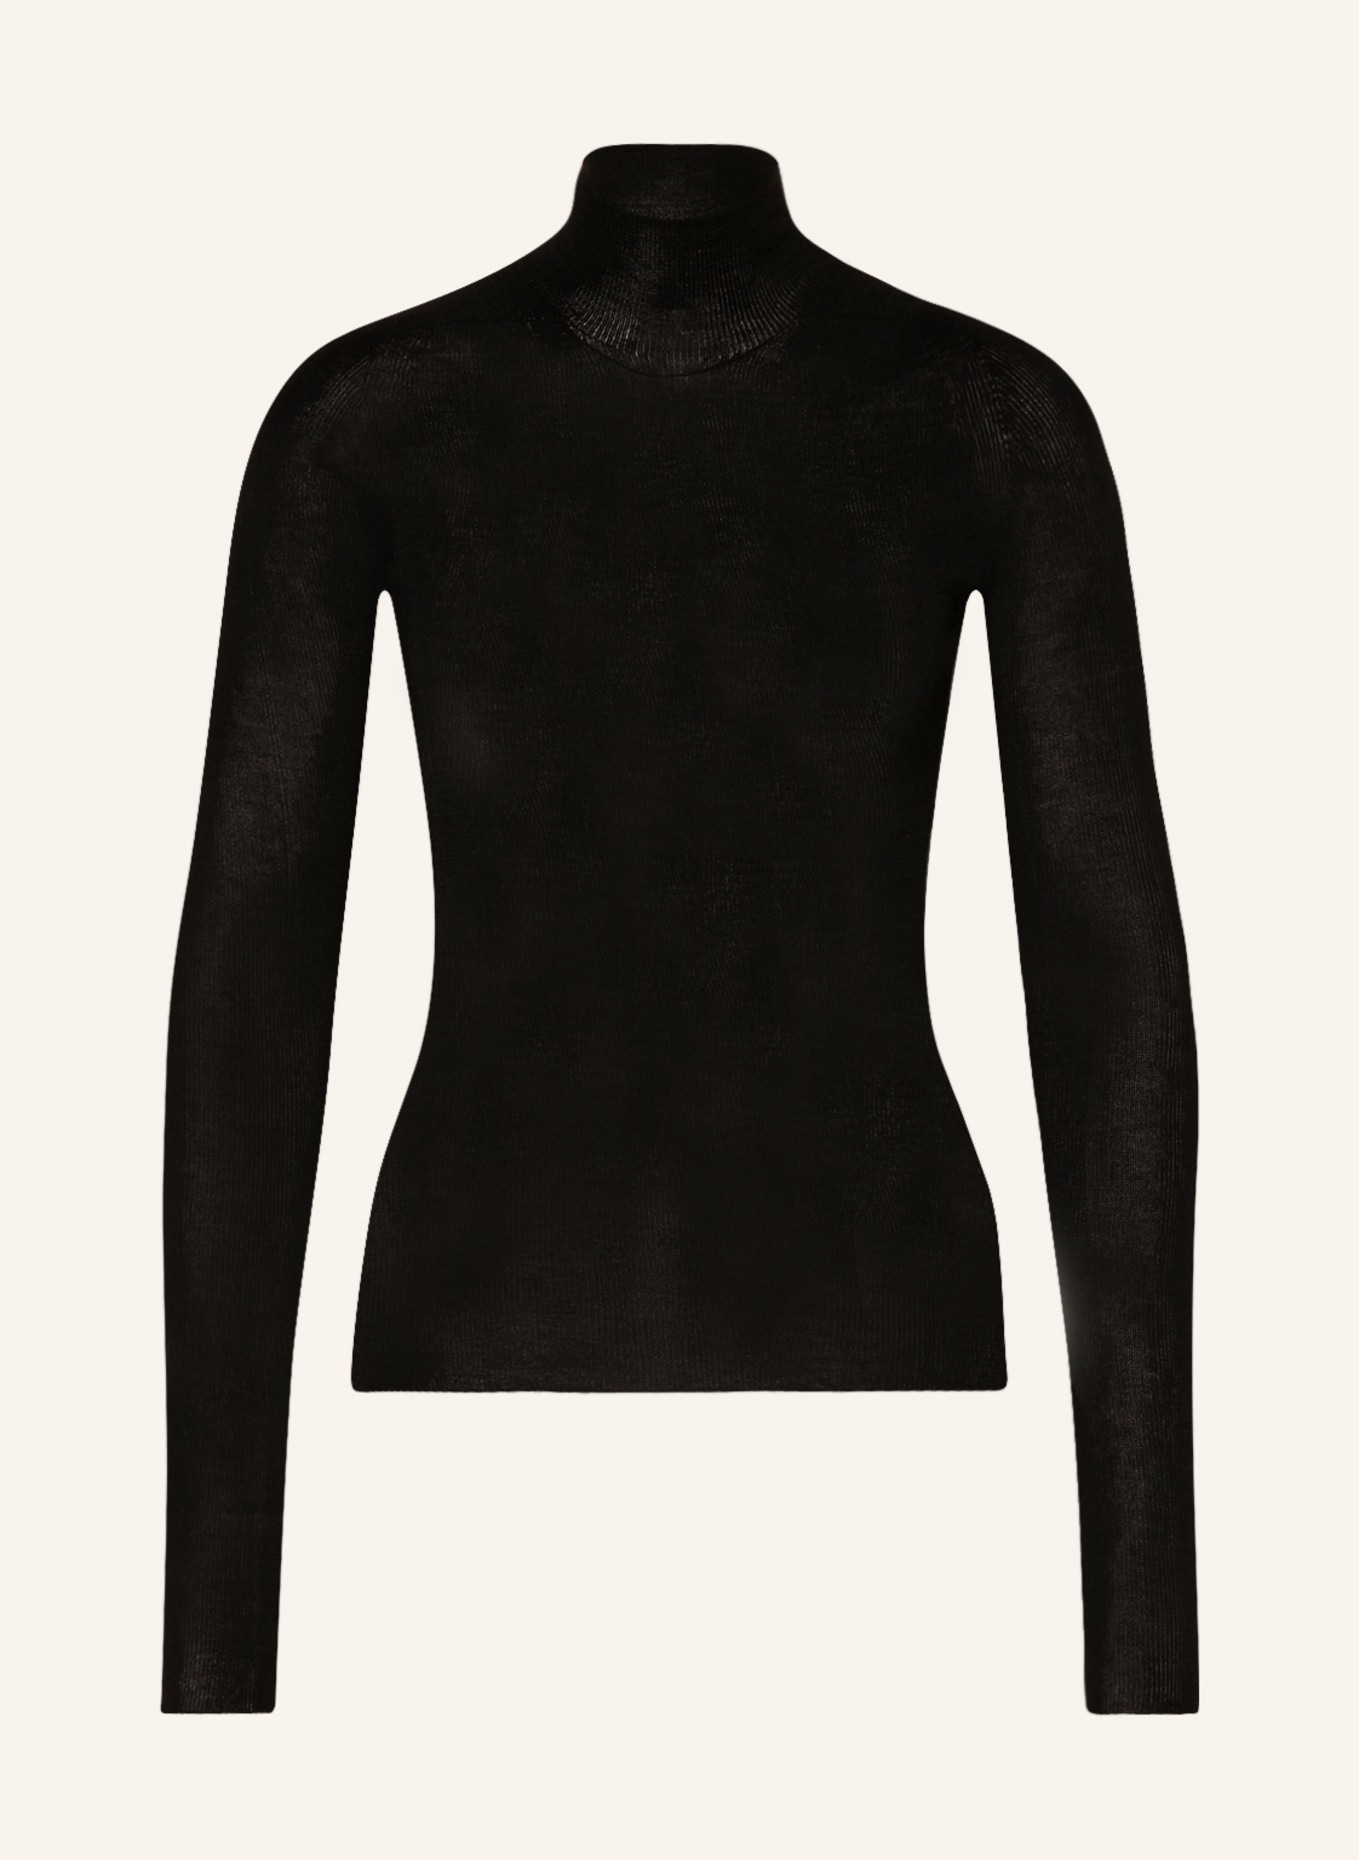 VERSACE Cashmere-Pullover mit Seide, Farbe: SCHWARZ (Bild 1)